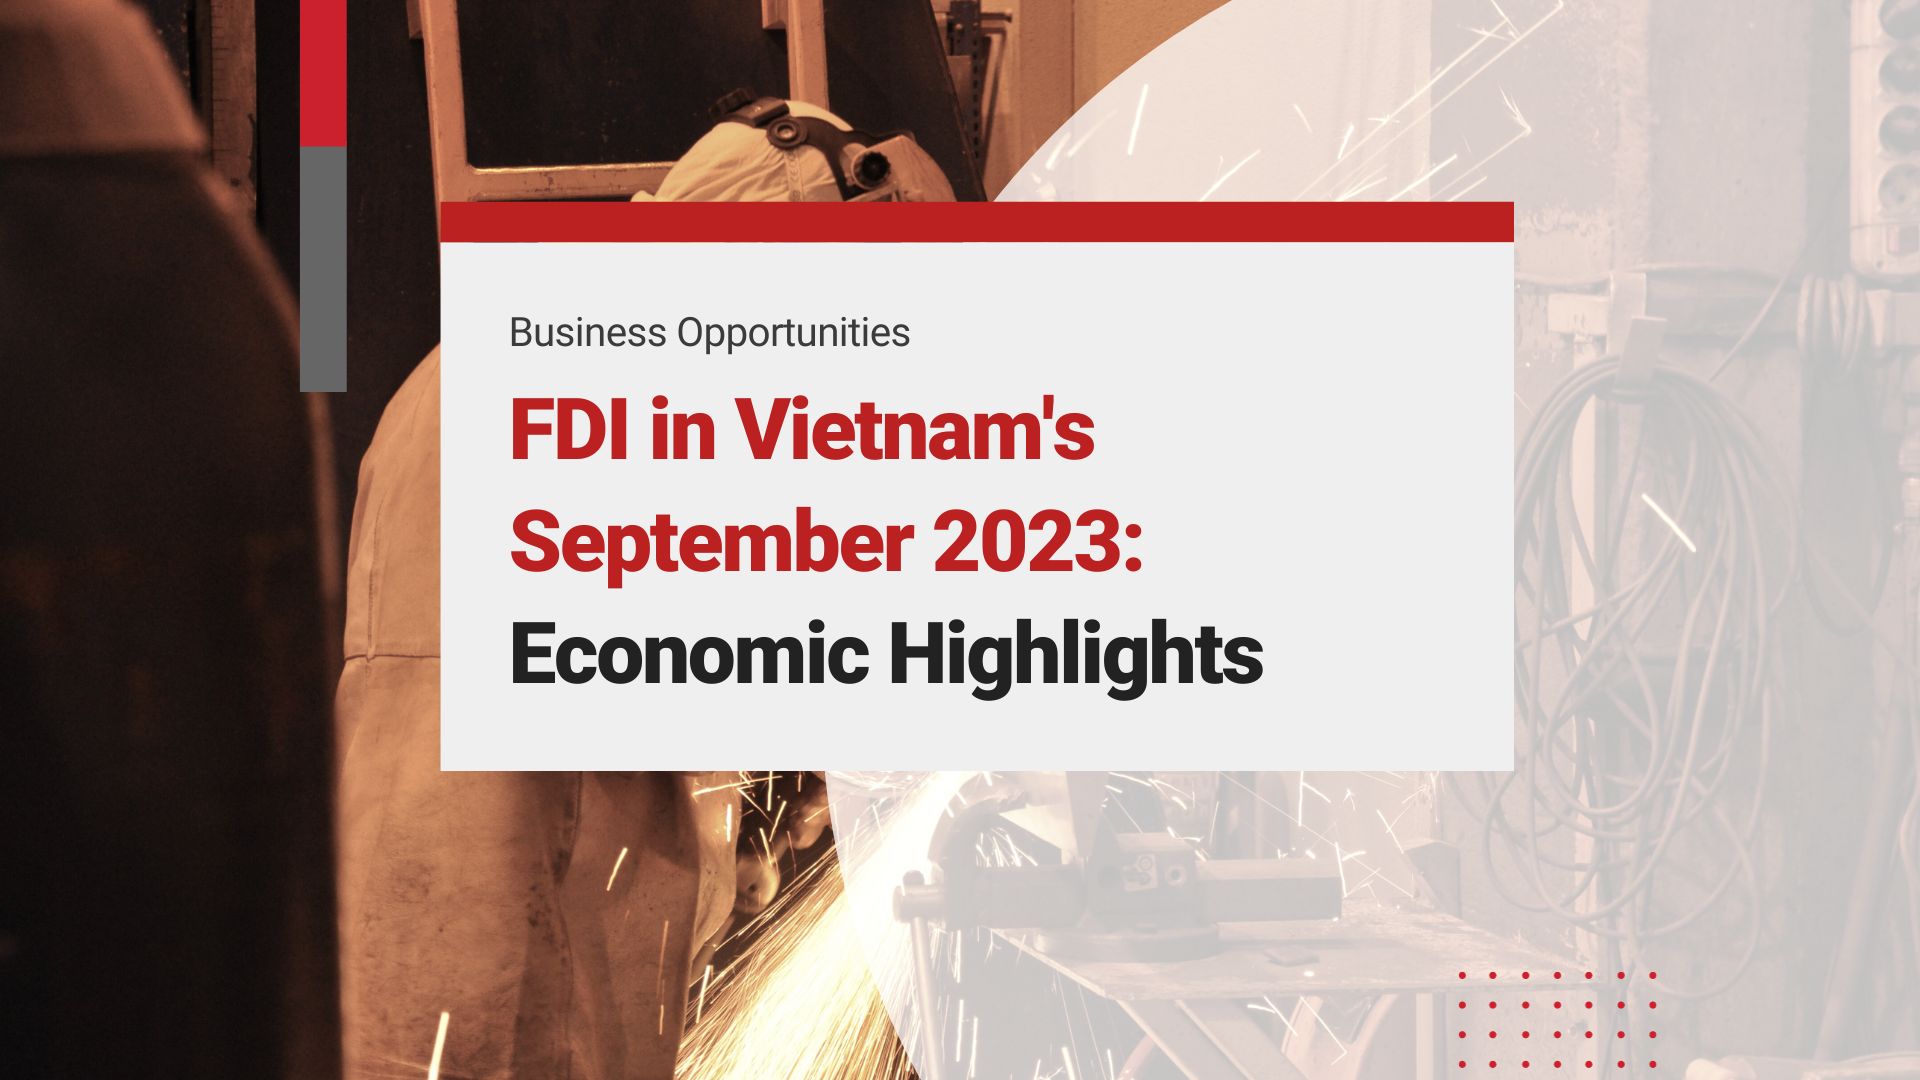 FDI in Vietnam in September 2023